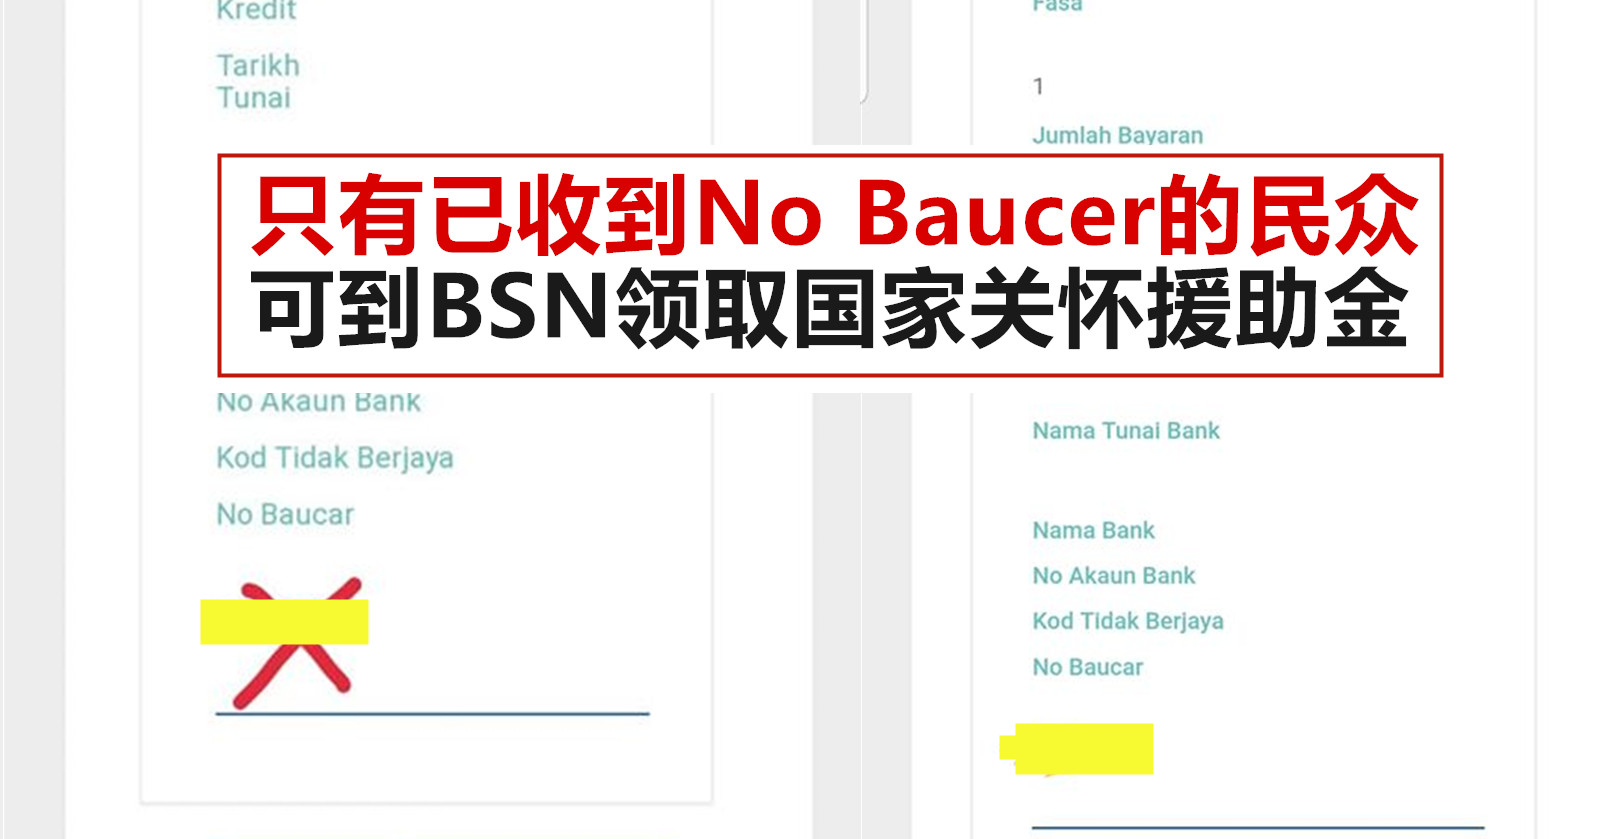 只有已收到No Baucer的民众可到BSN领取国家关怀援助金 - WINRAYLAND